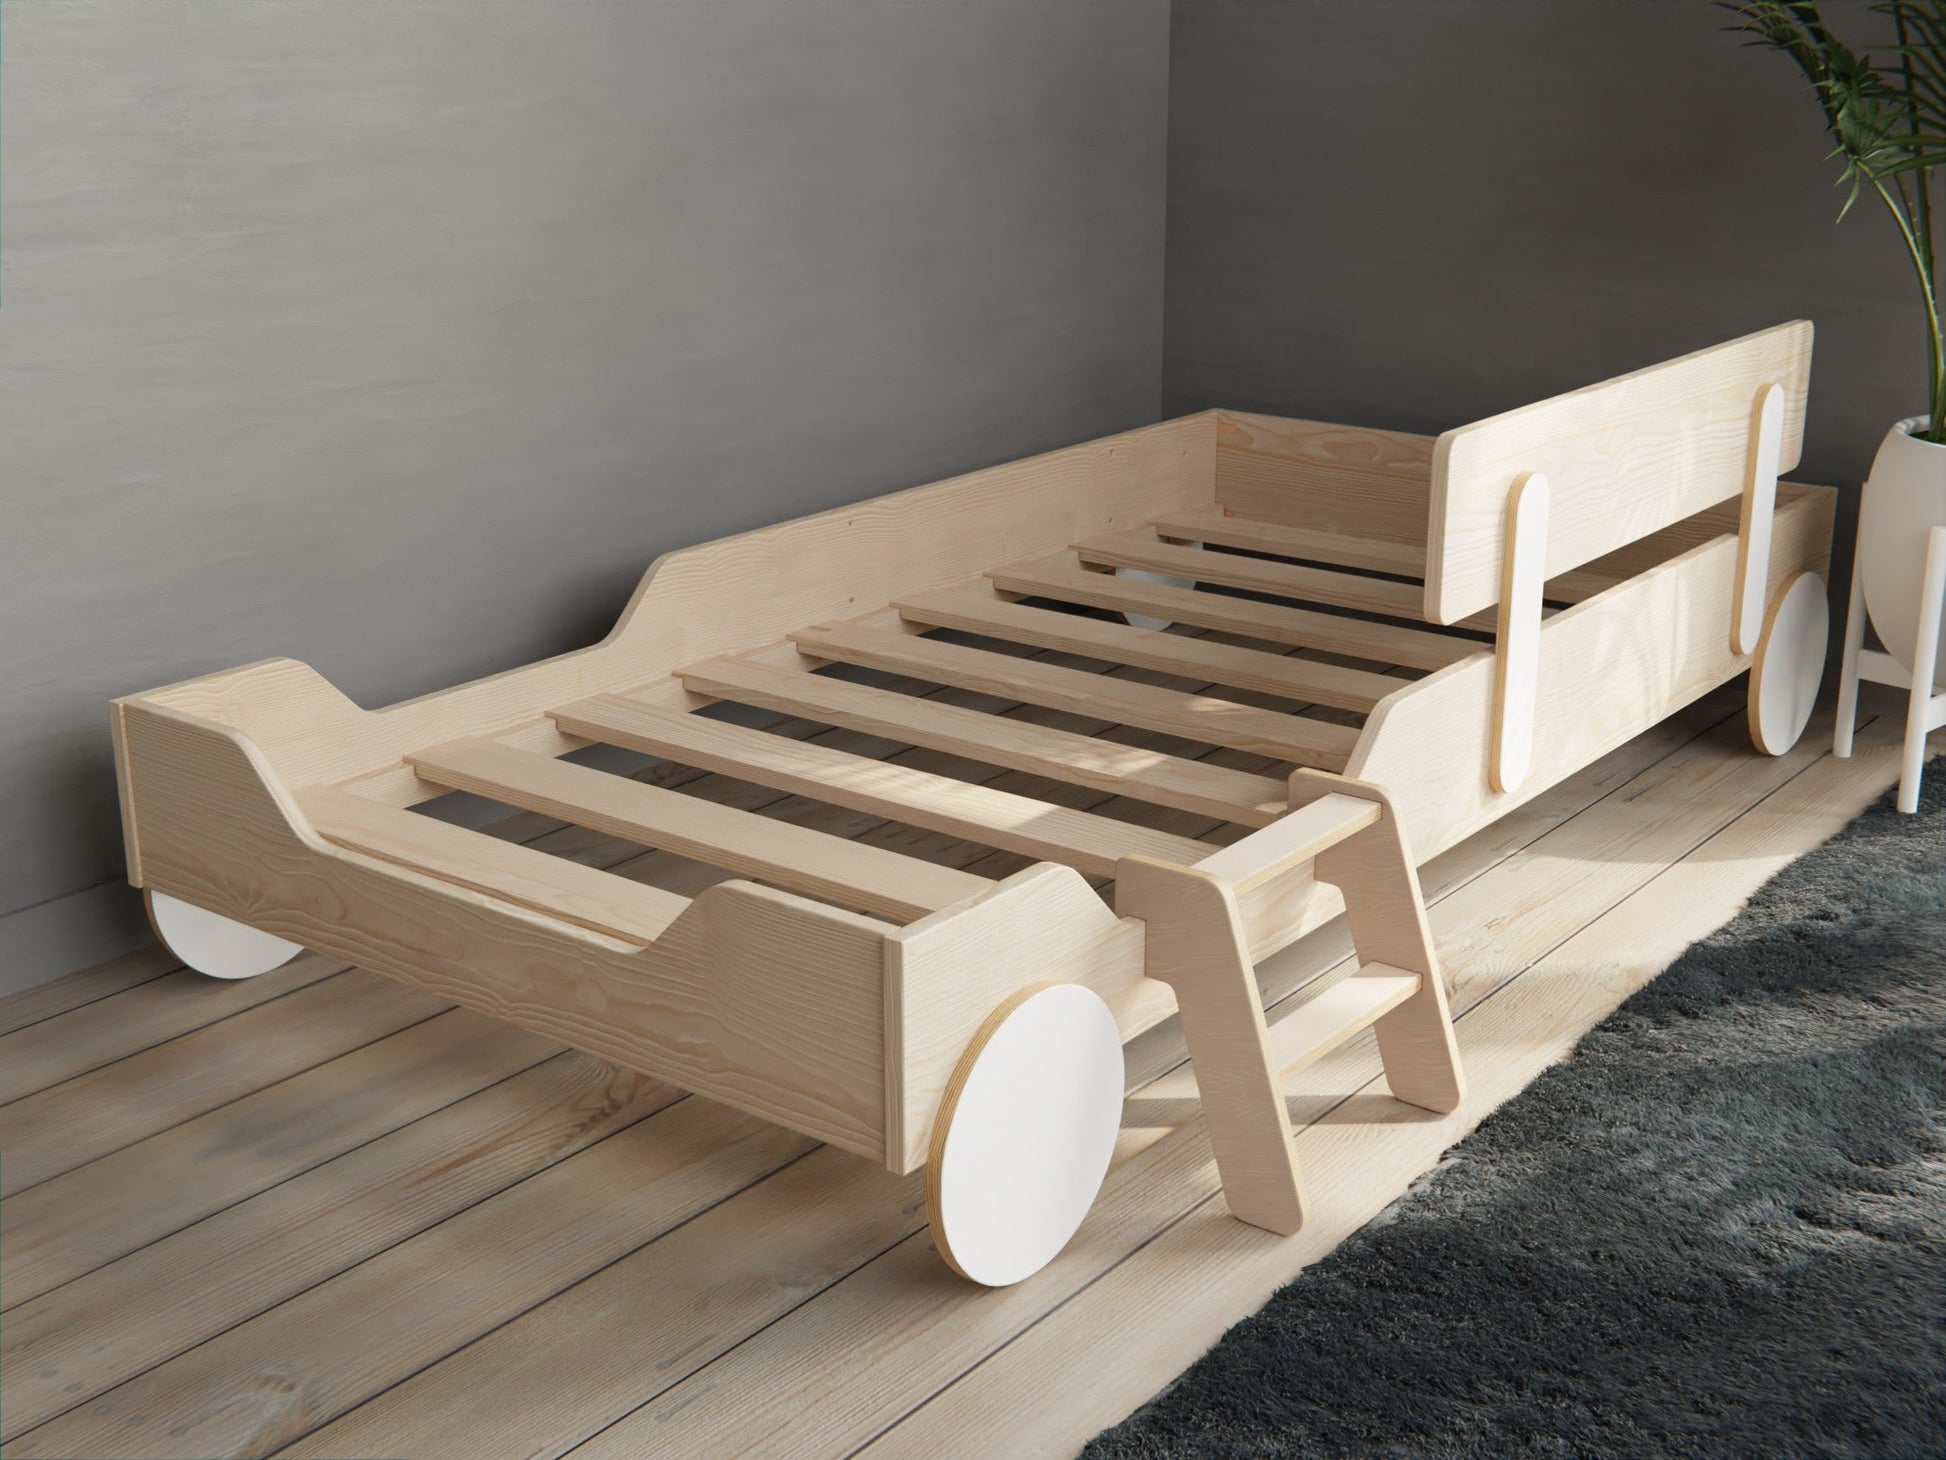 Tiny ladder for Toddler beds - KitSmart Furniture